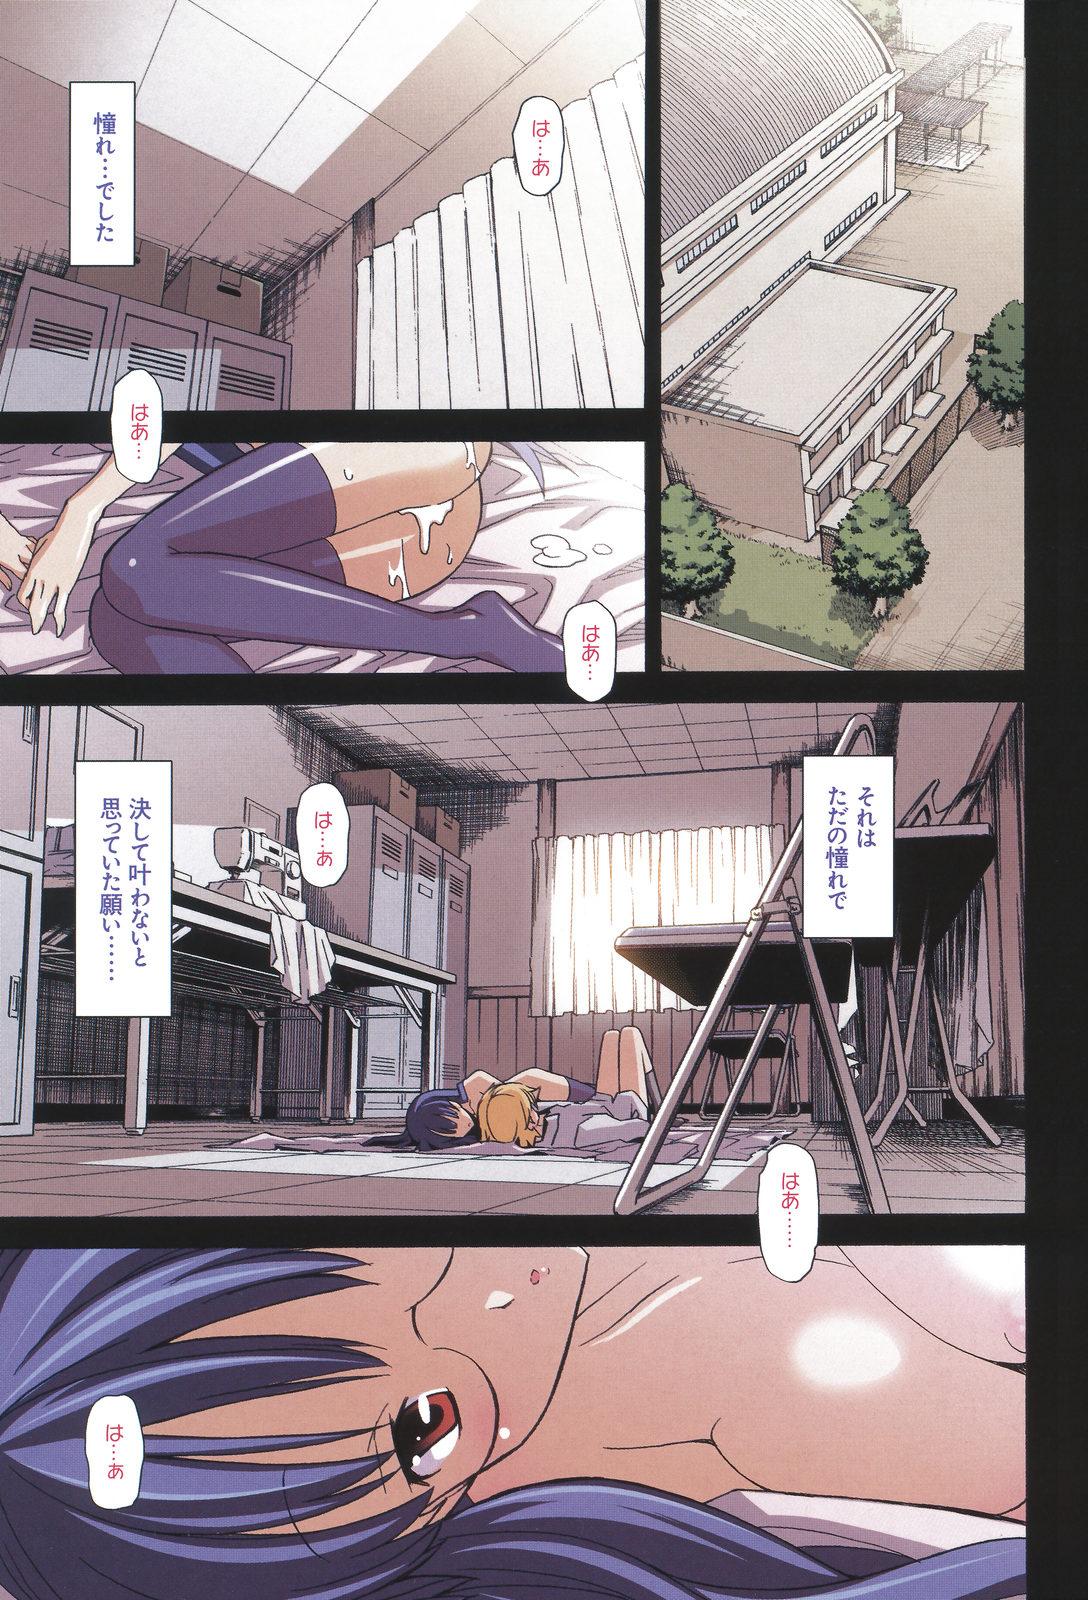 Topless Aki Sora - Volume 4 - Aki sora Transvestite - Page 9